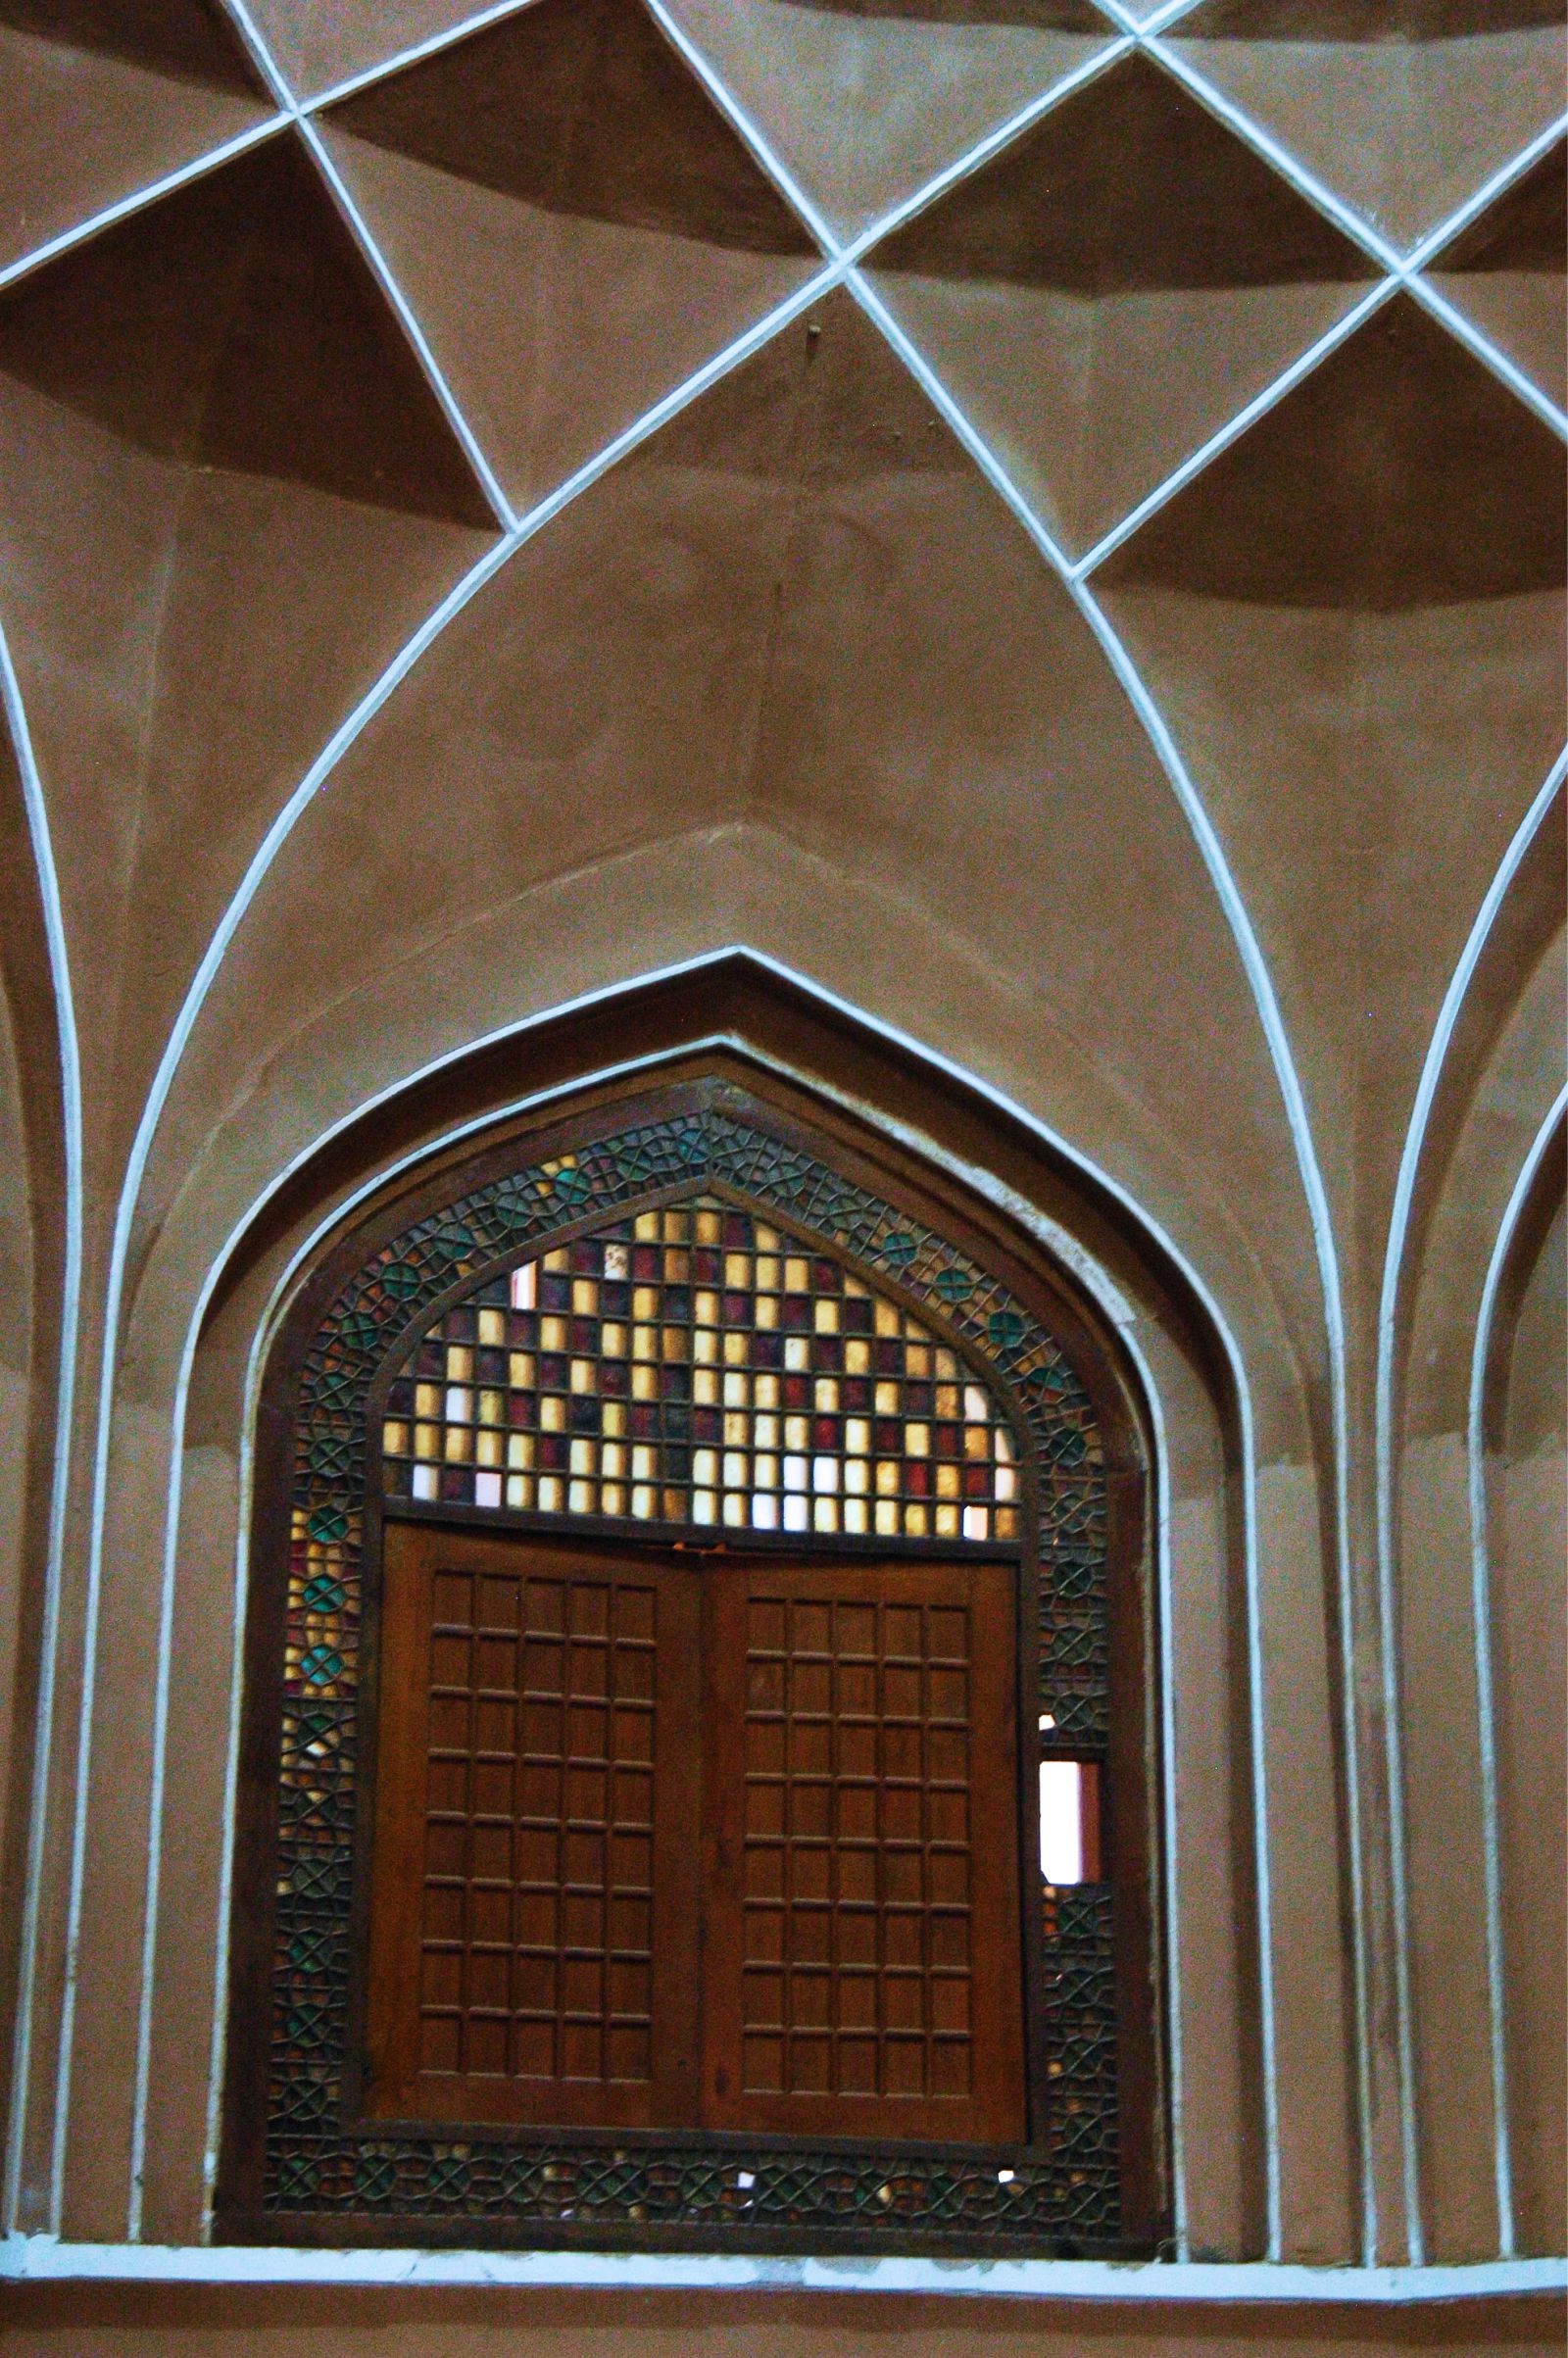  Tháp đón gió - tuyệt tác kiến trúc của thành phố sa mạc Yazd  - Ảnh 11.